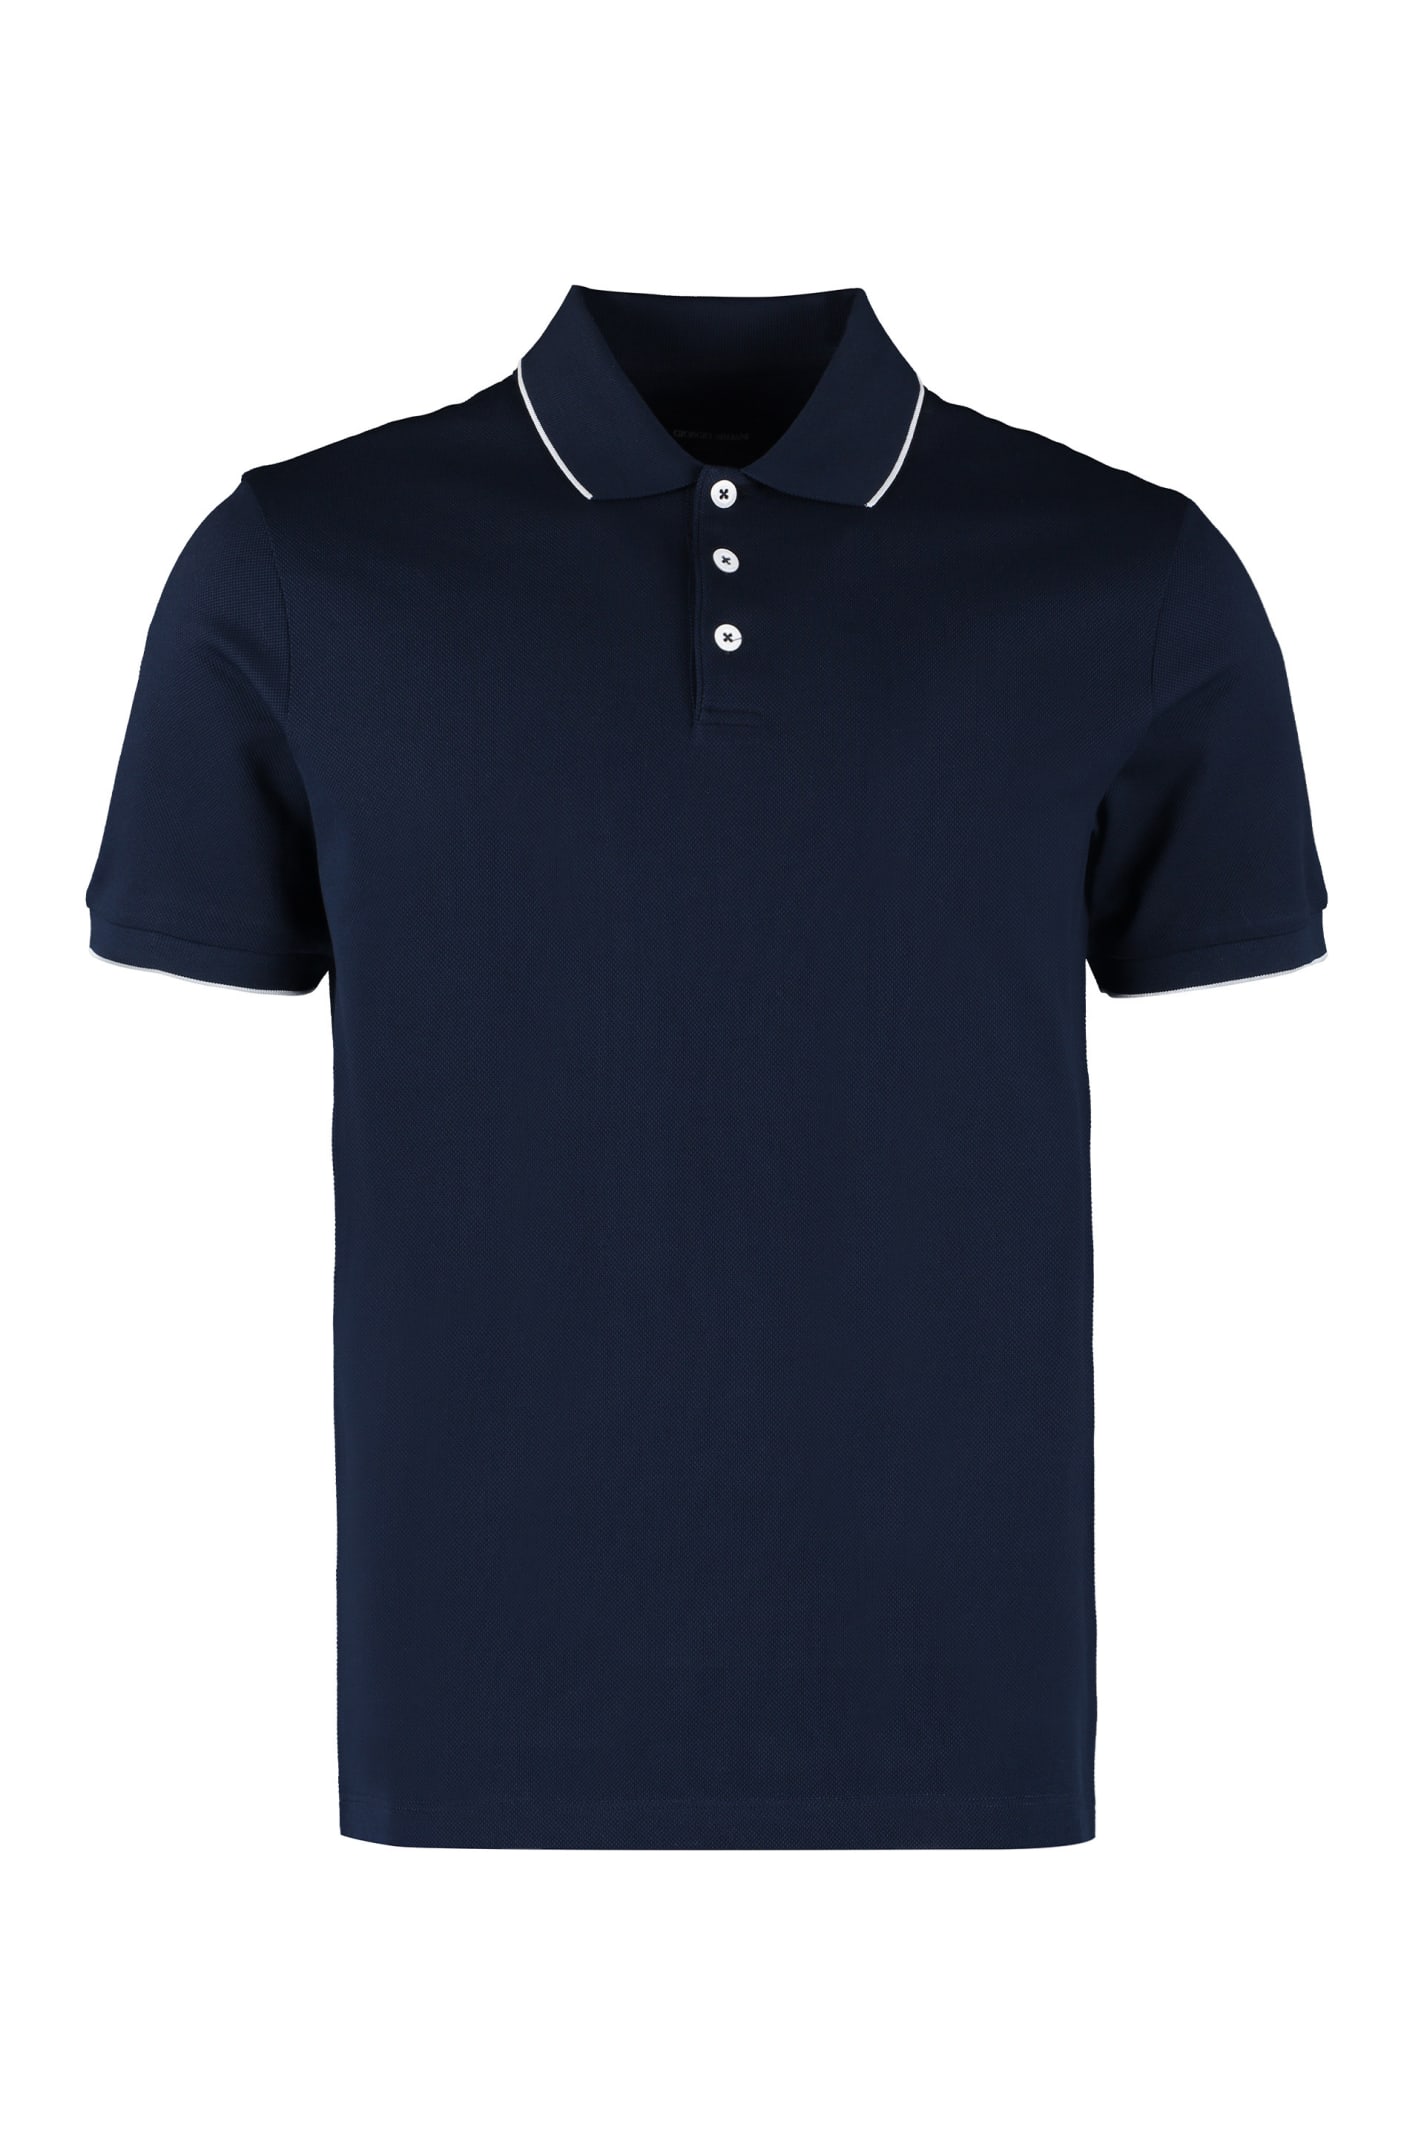 Giorgio Armani Short Sleeve Cotton Polo Shirt